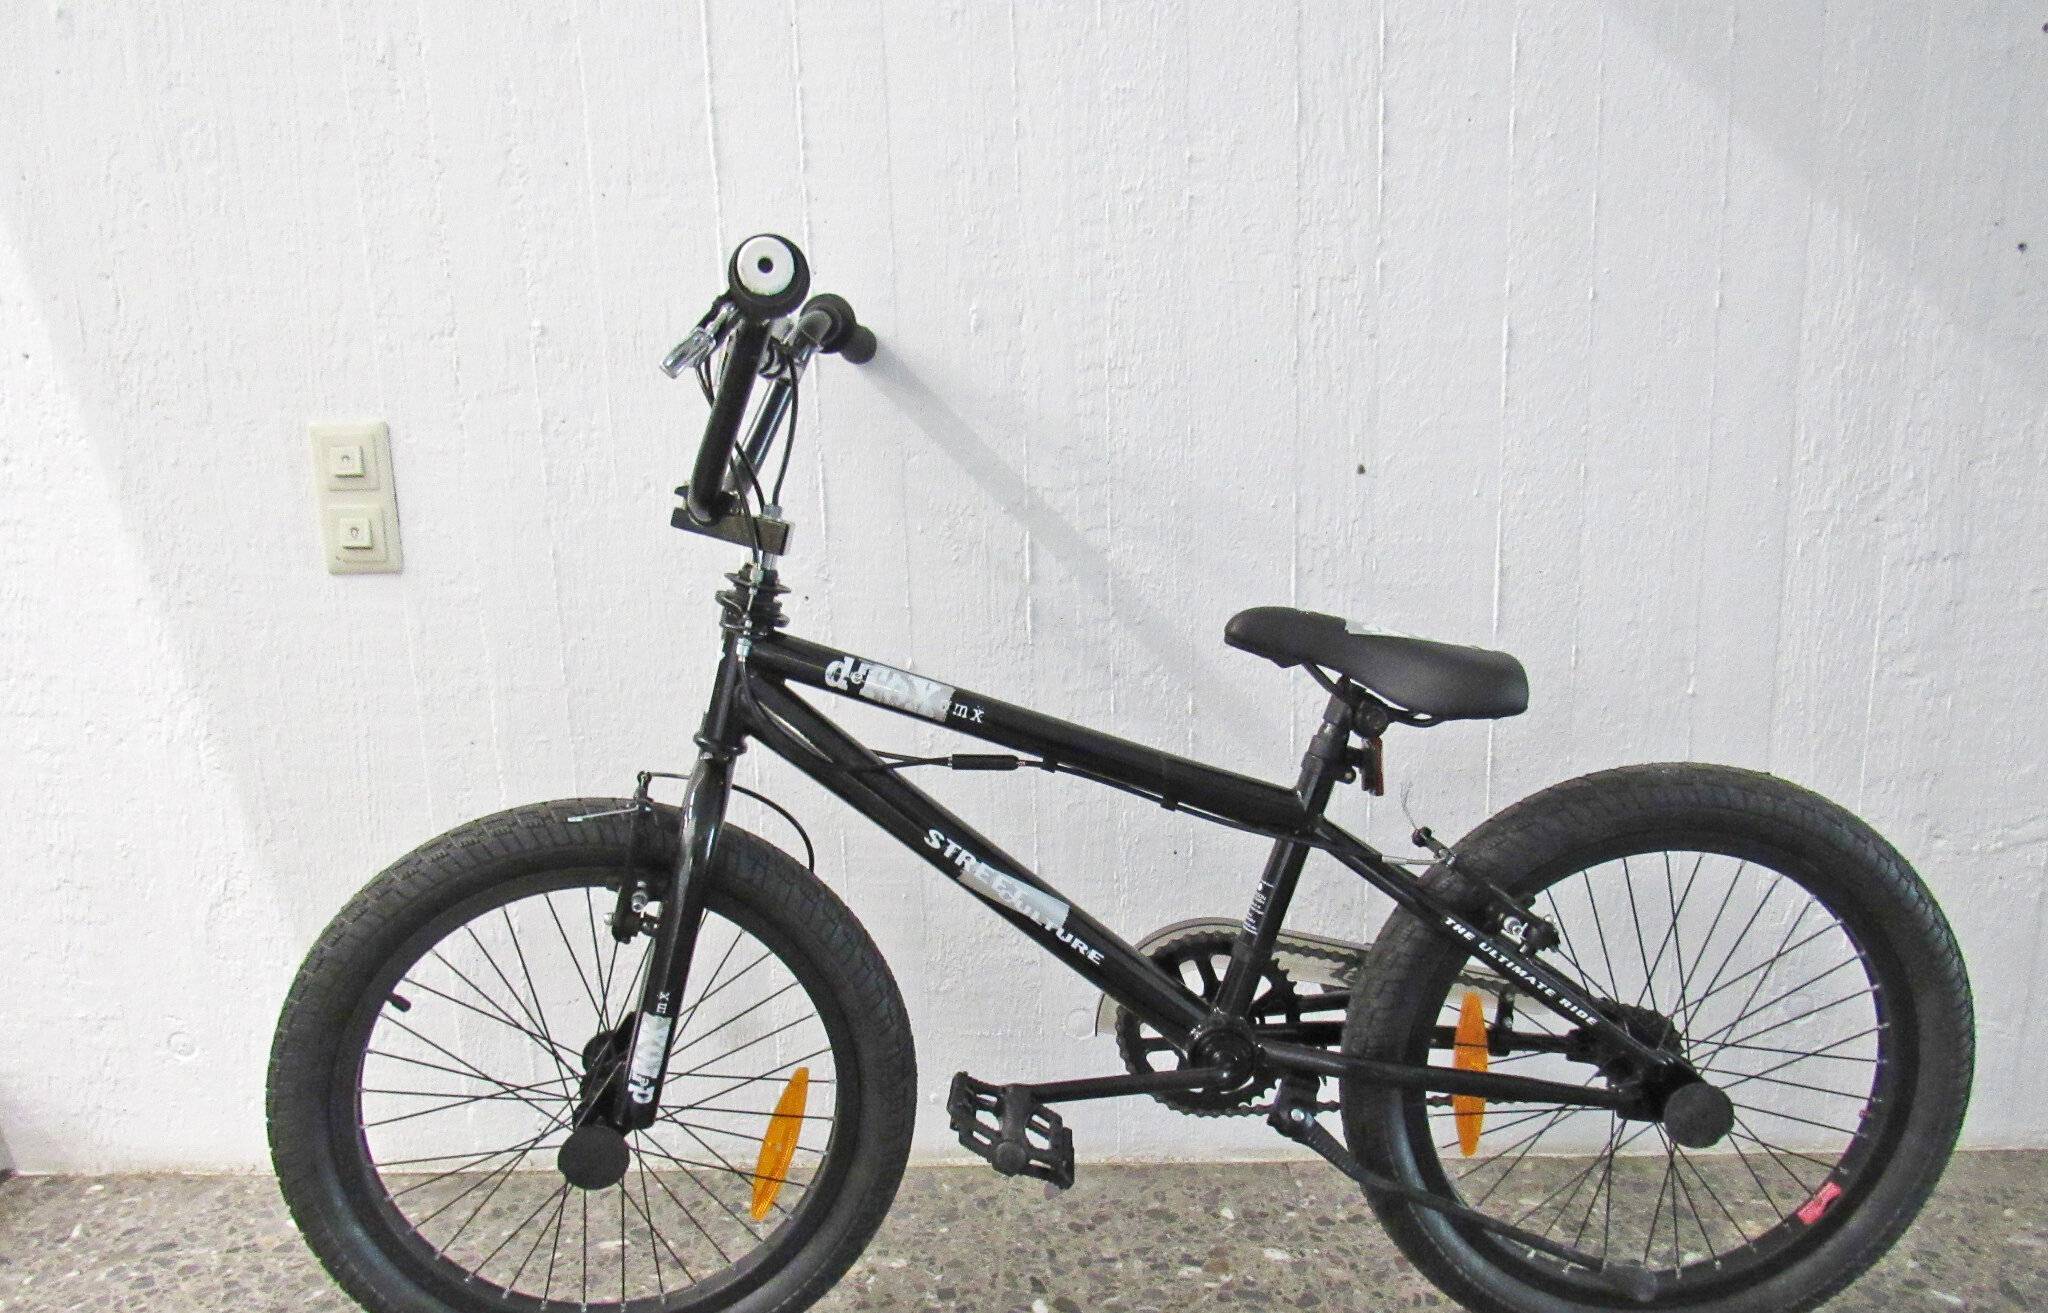  Die Polizei sucht den rechtmäßigen Eigentümer dieses BMX-Fahrrads. 
  